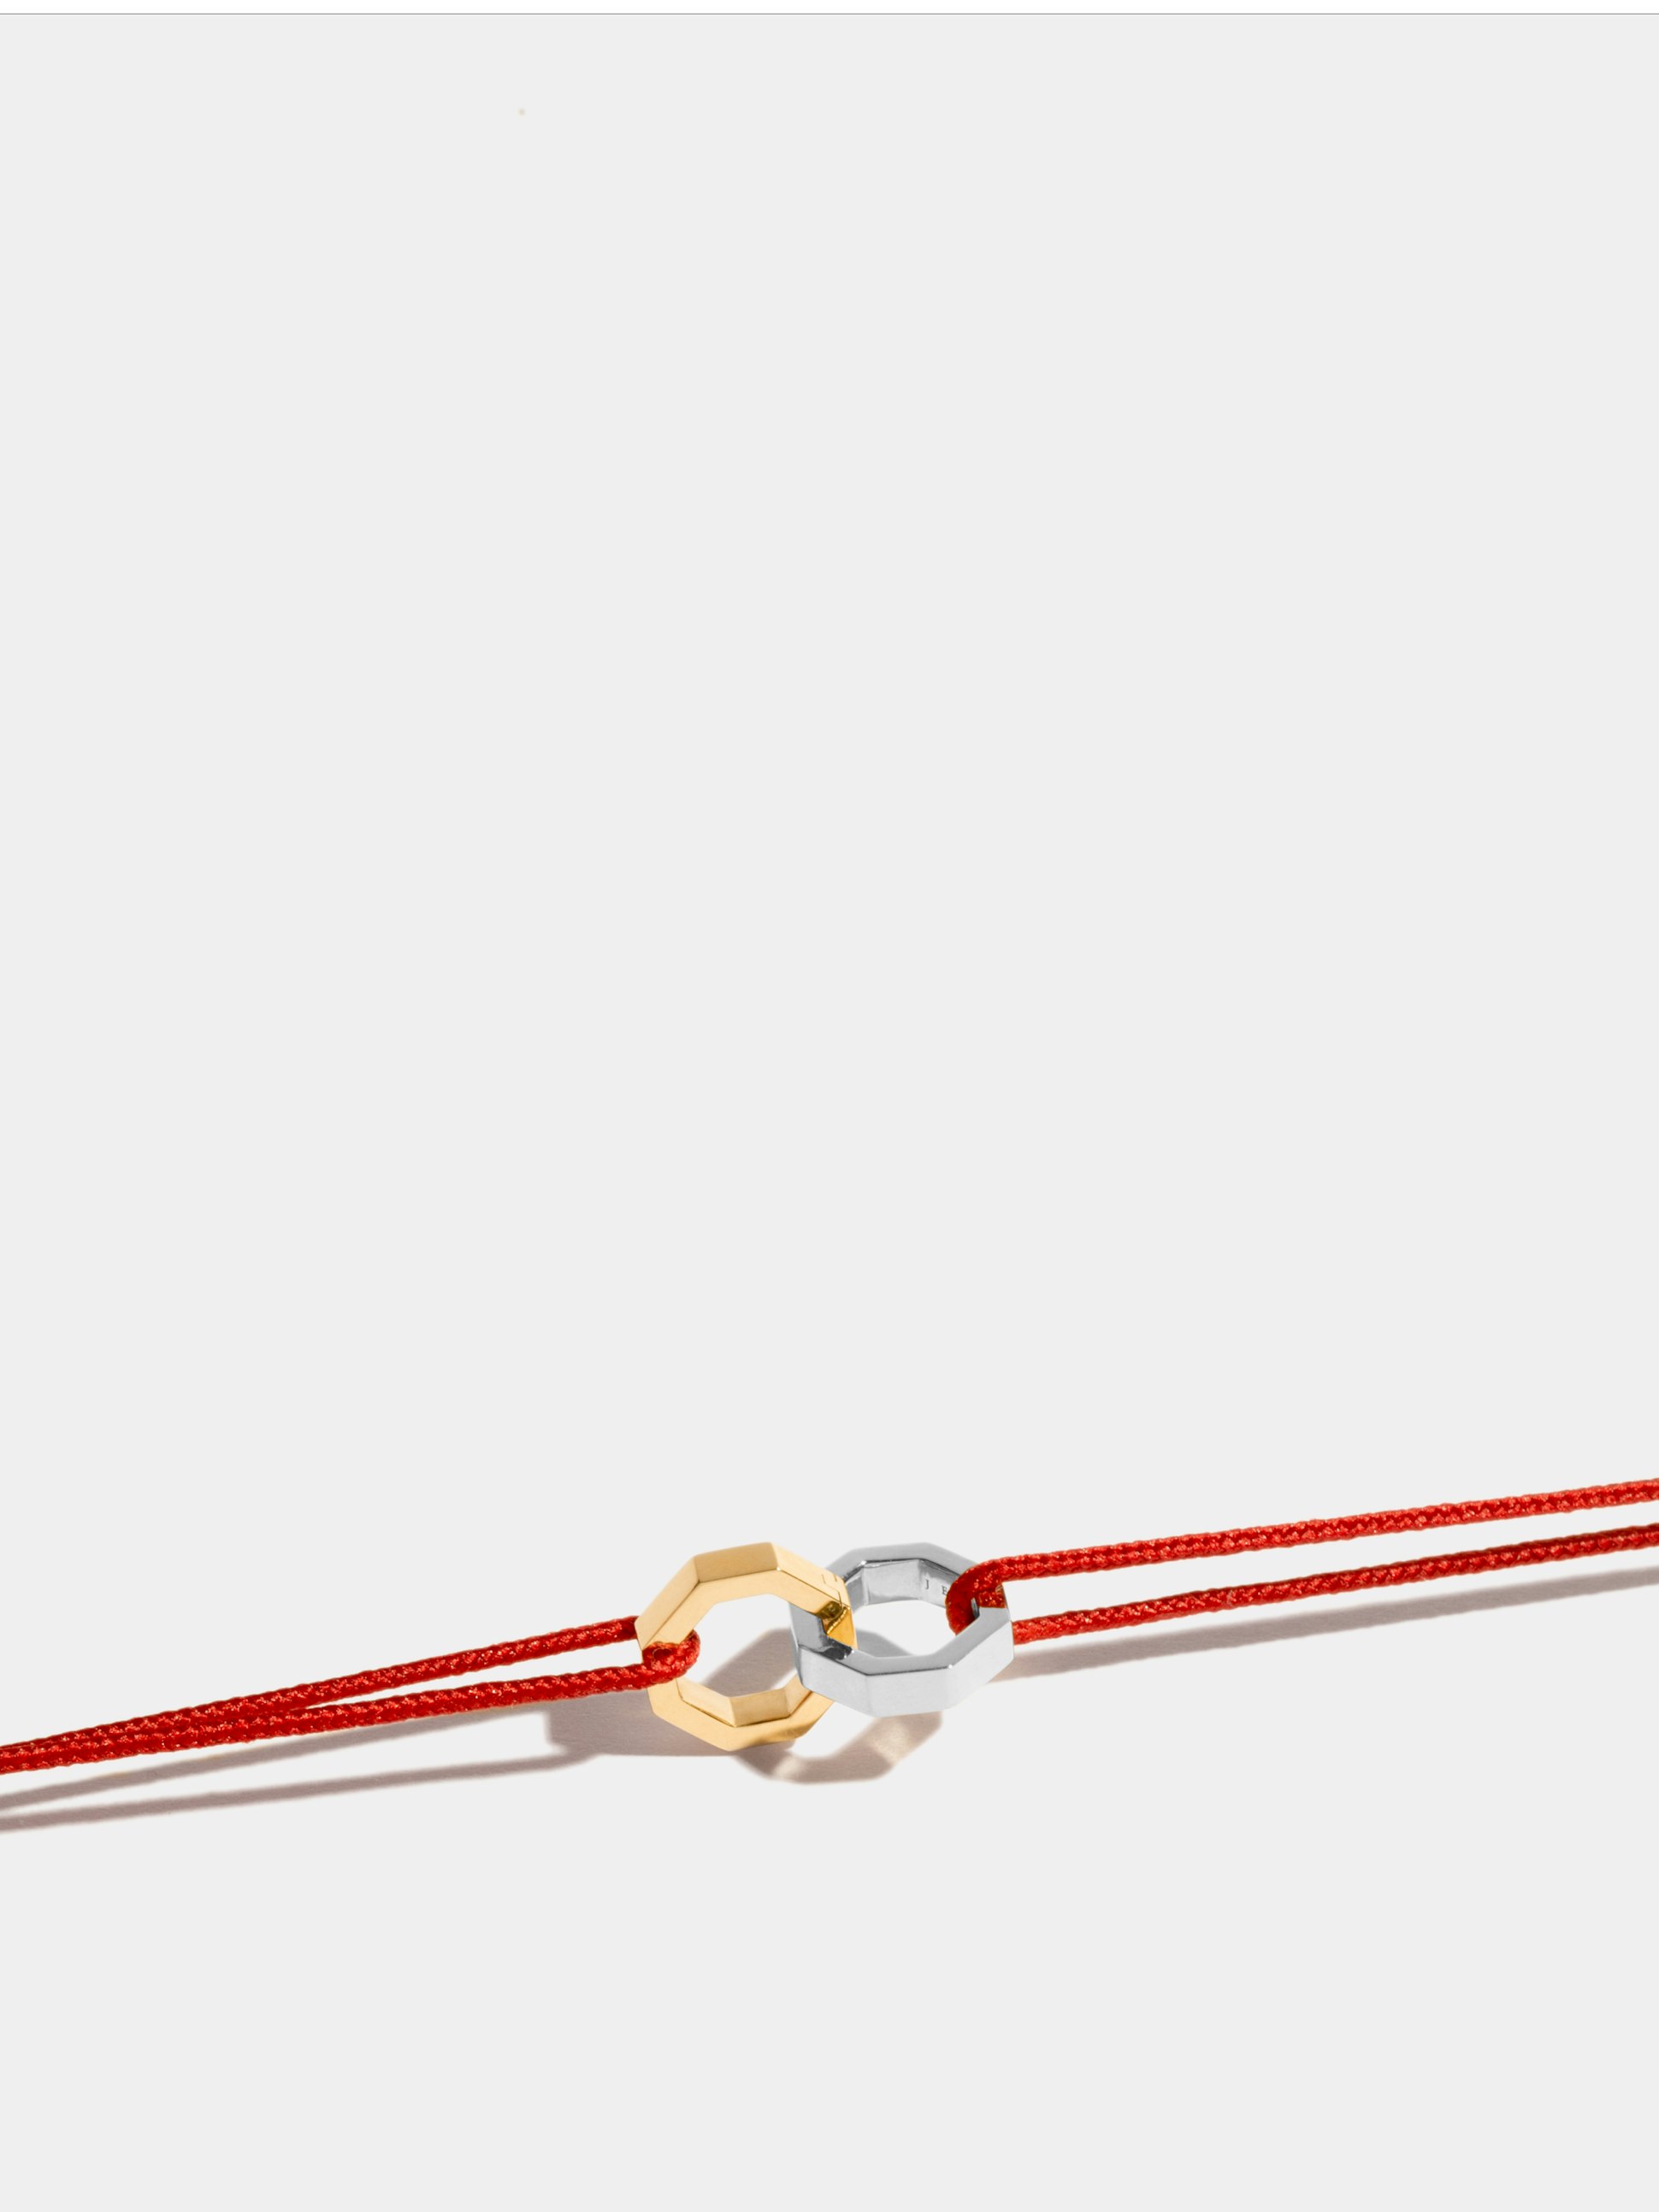 Double motif Octogone en Or jaune et blanc éthique 18 carats certifié Fairmined, sur cordon rouge